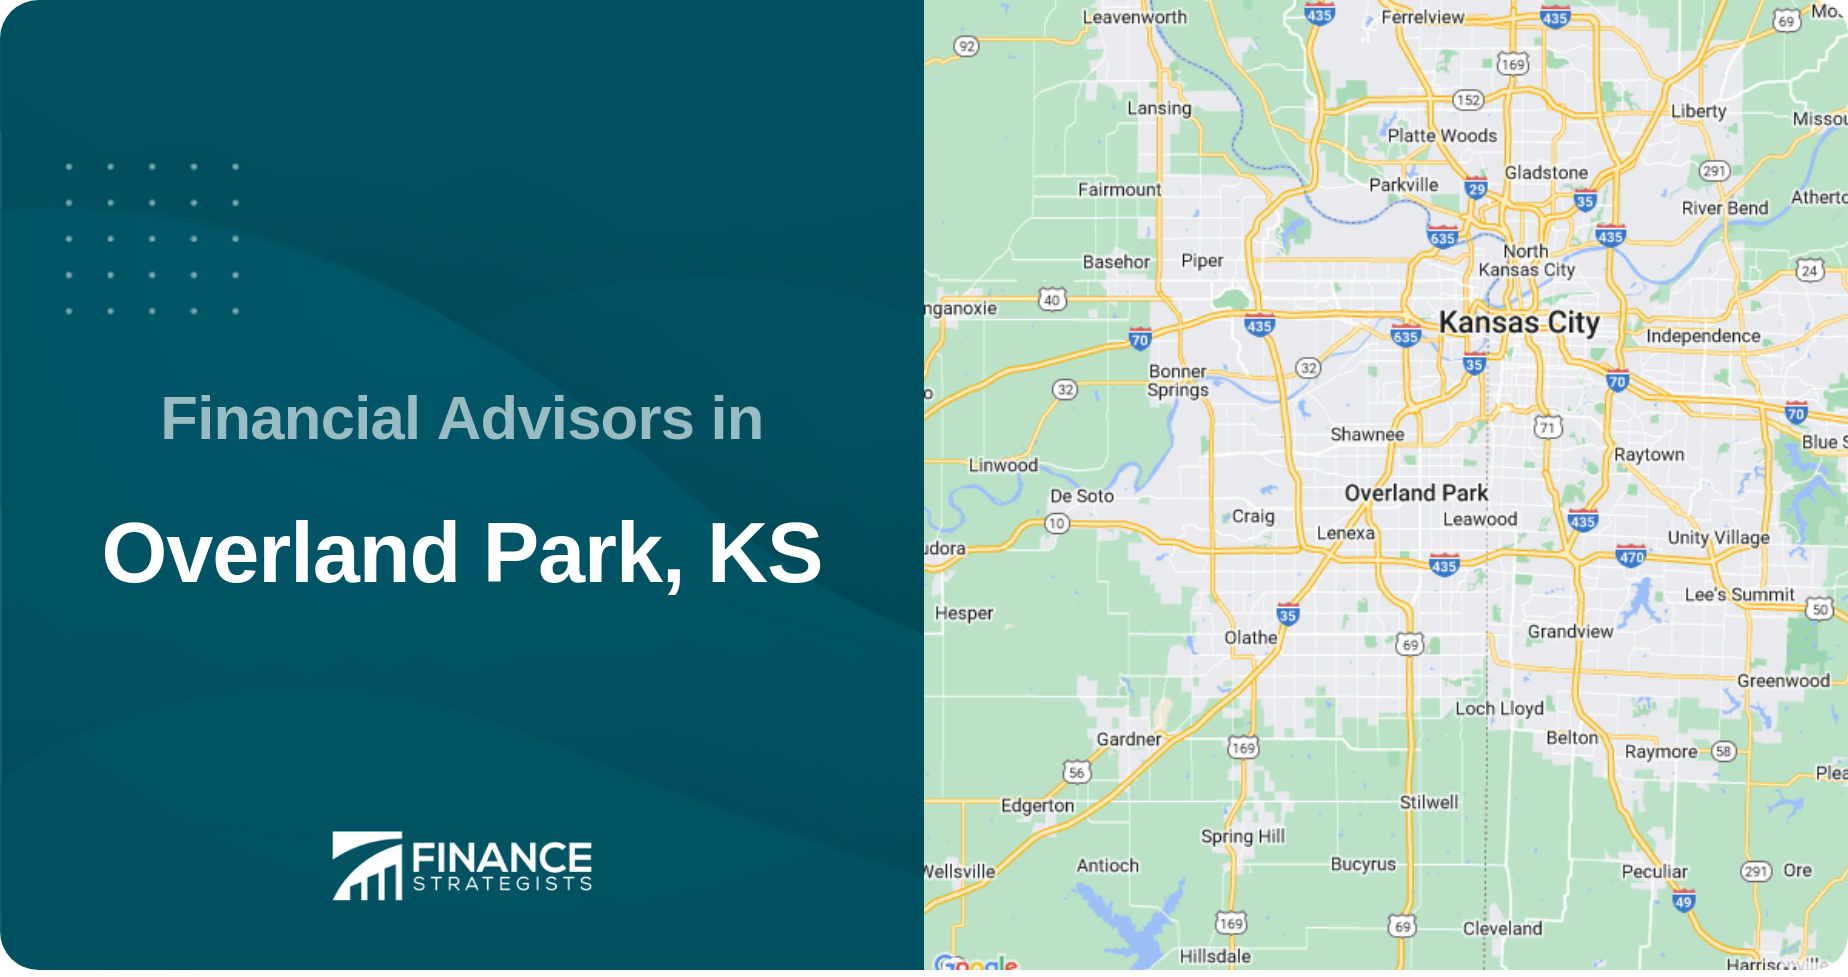 Financial Advisors in Overland Park, KS